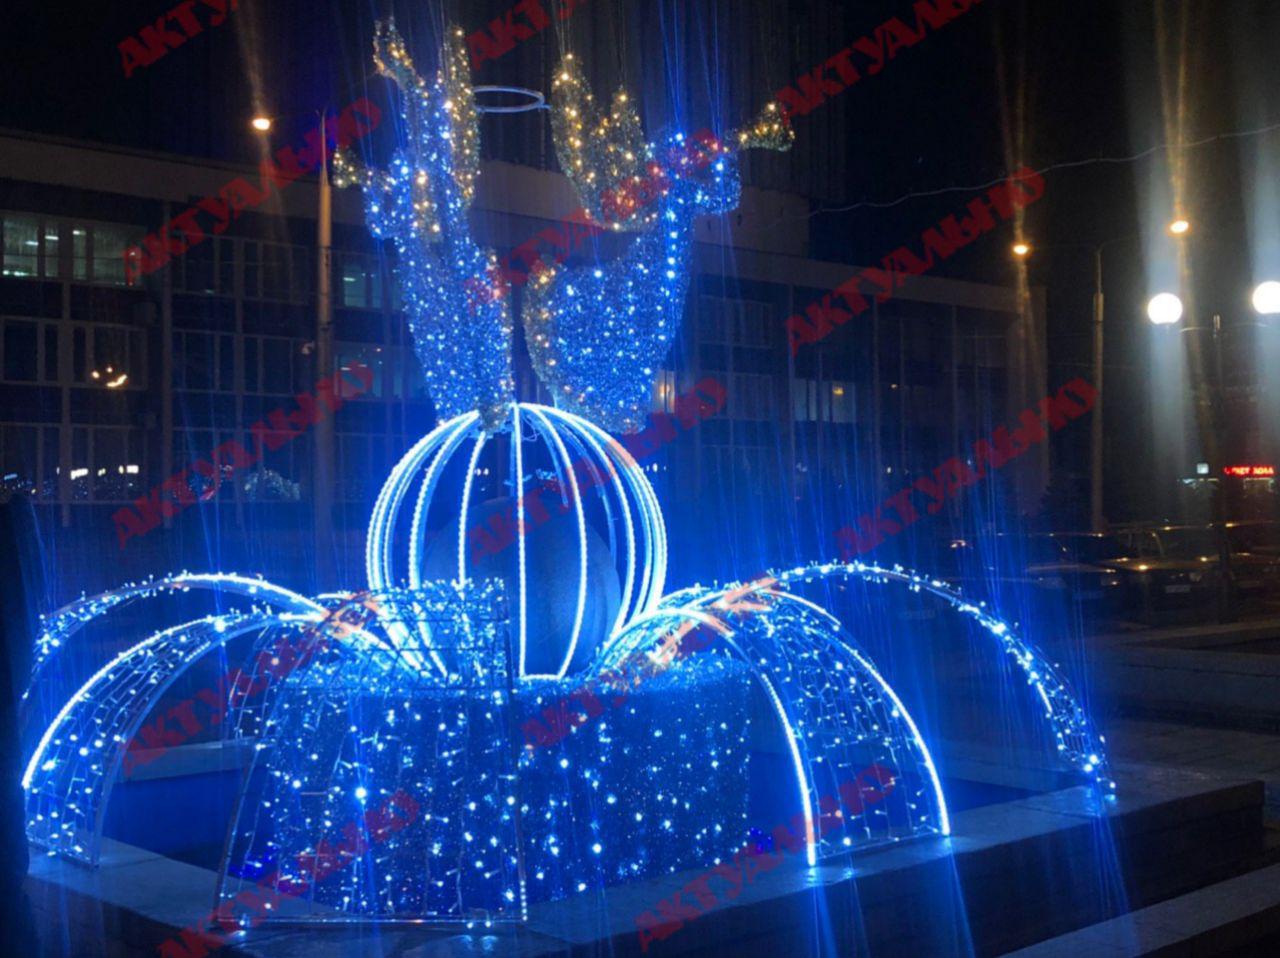 “Ярко и по-новогоднему”: в Запорожье включили праздничную иллюминацию (ВИДЕО, ФОТО)